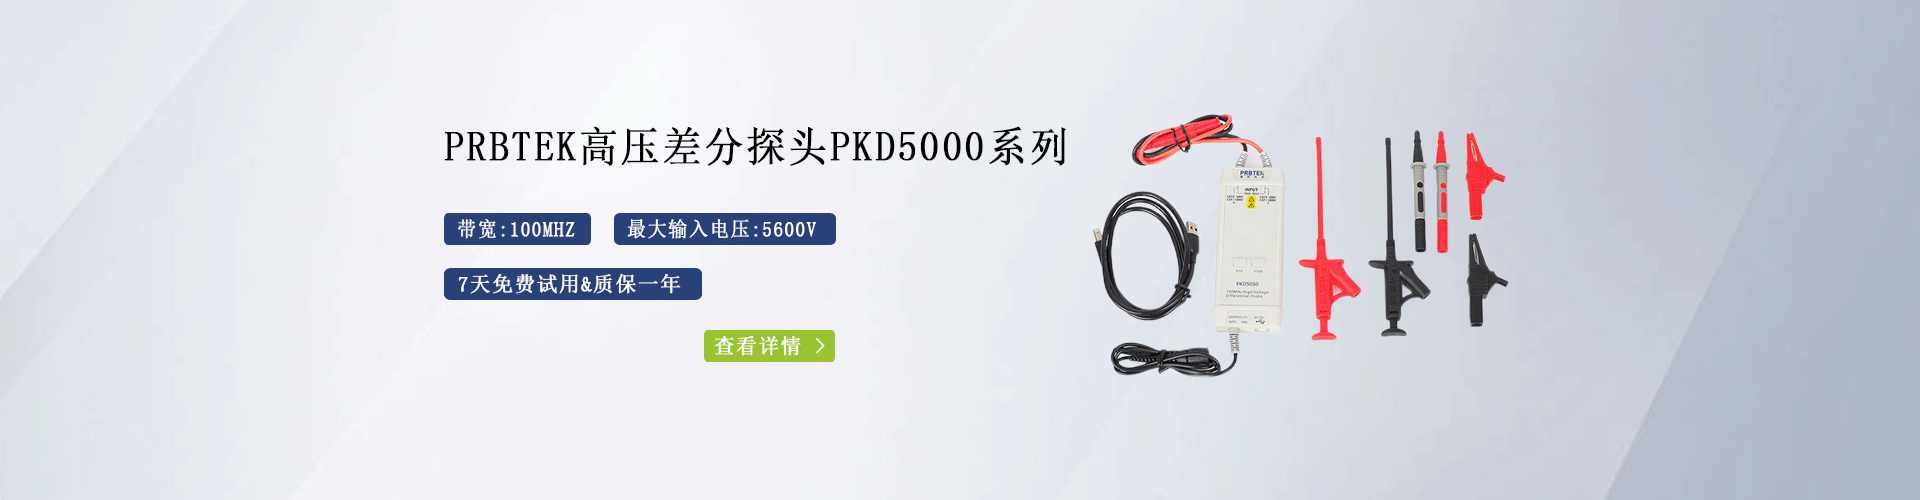 普科高壓差分探頭PKD5000系列